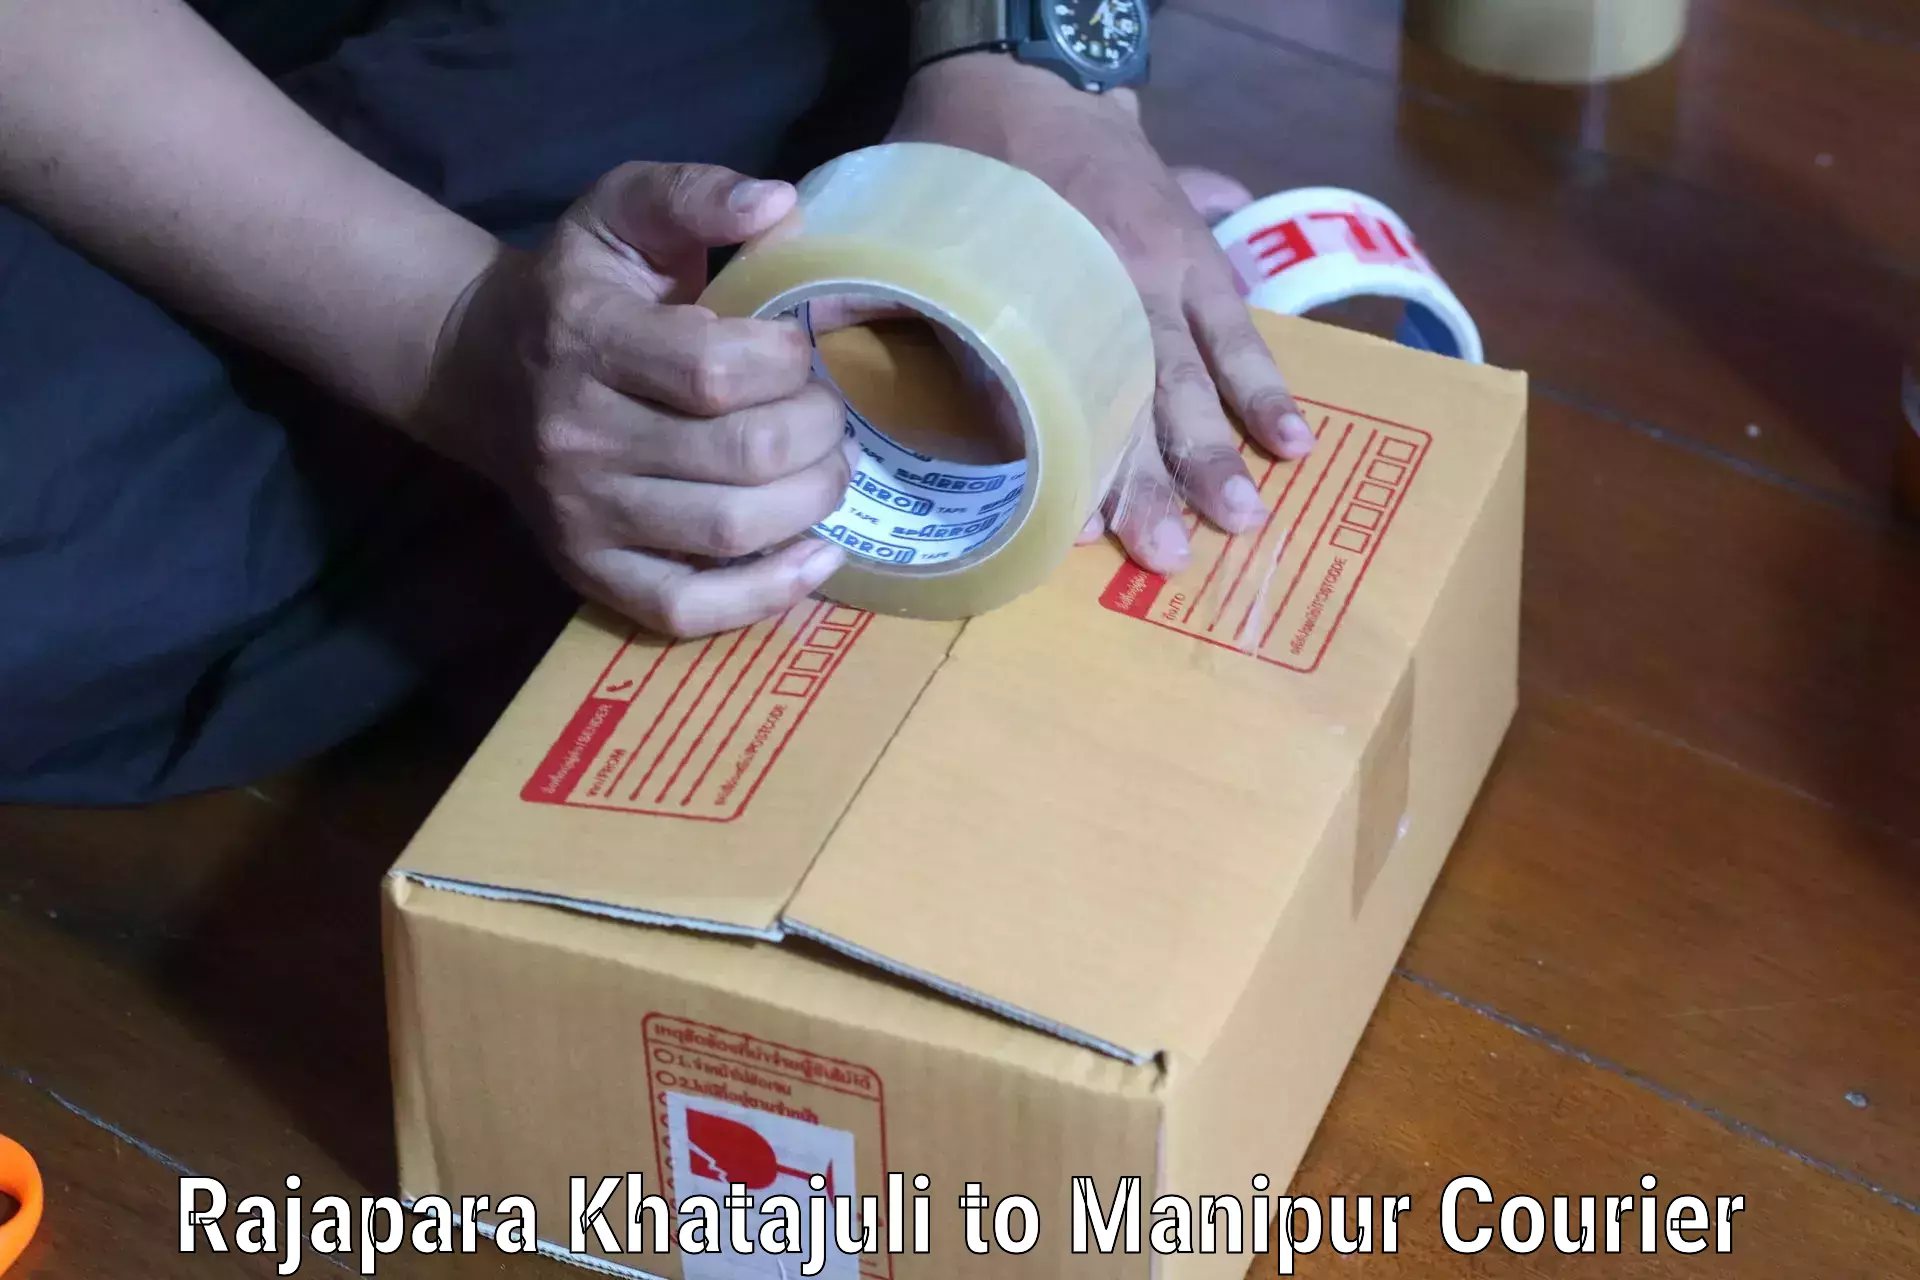 Efficient logistics management in Rajapara Khatajuli to Manipur